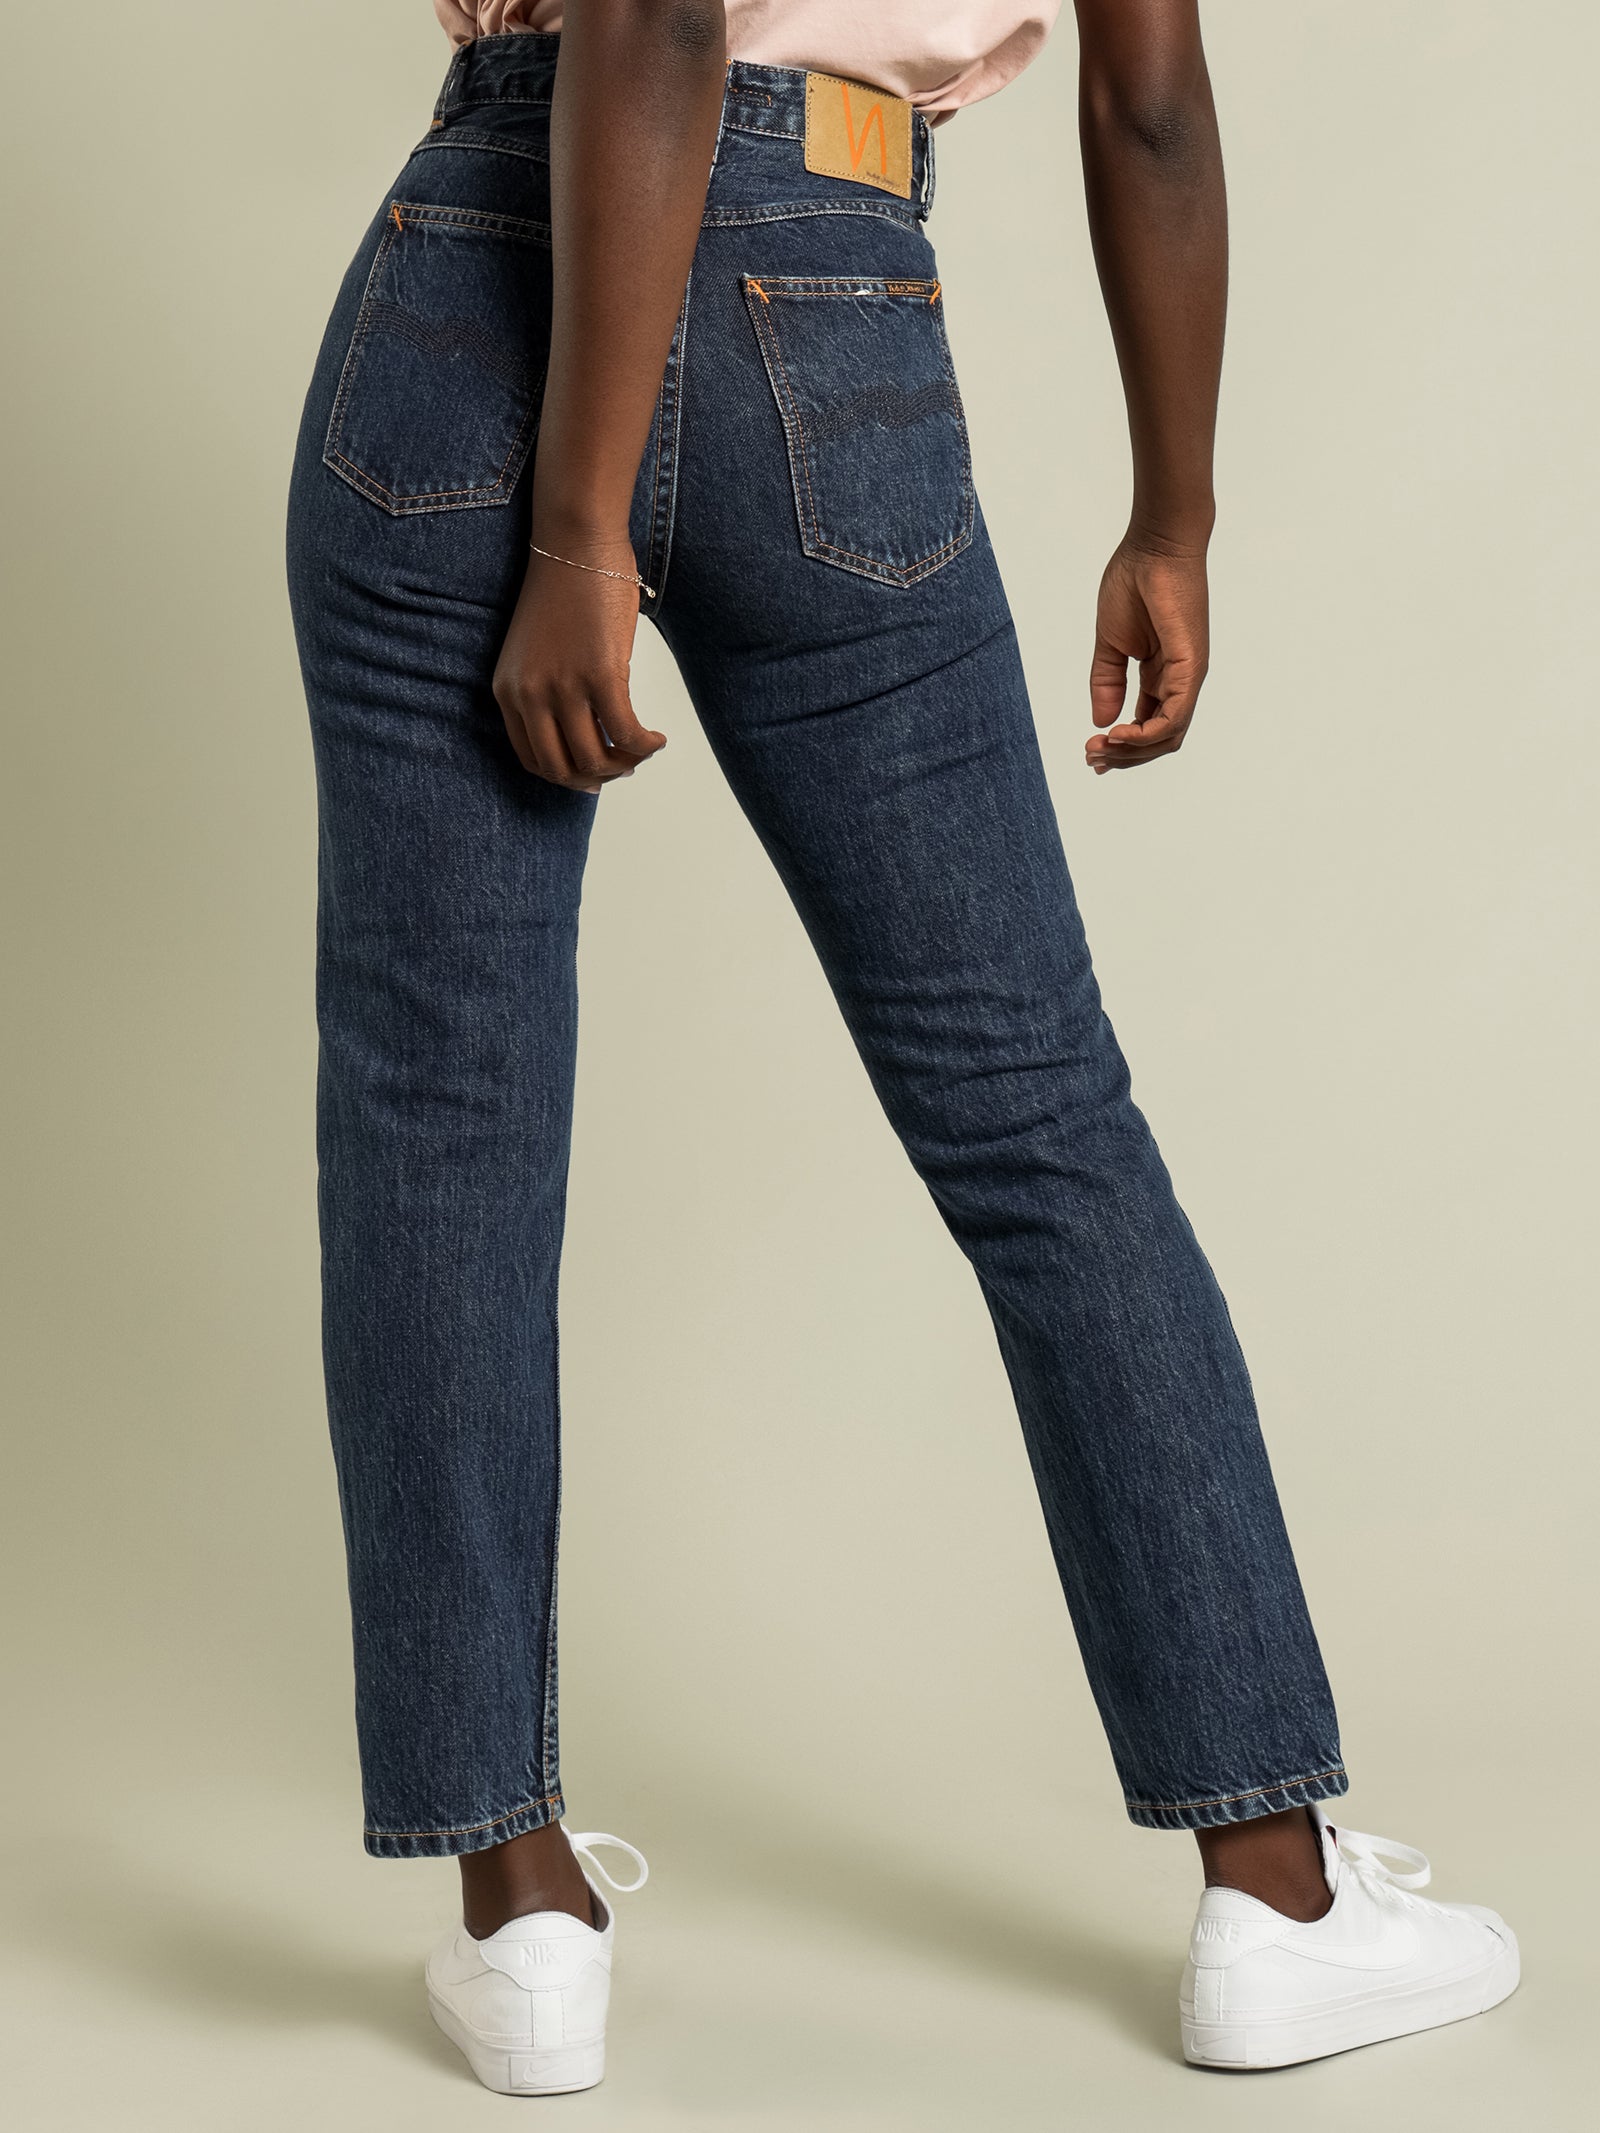 Breezy Britt Slim Tapered Jeans in Dark Stellar Blue - Glue Store